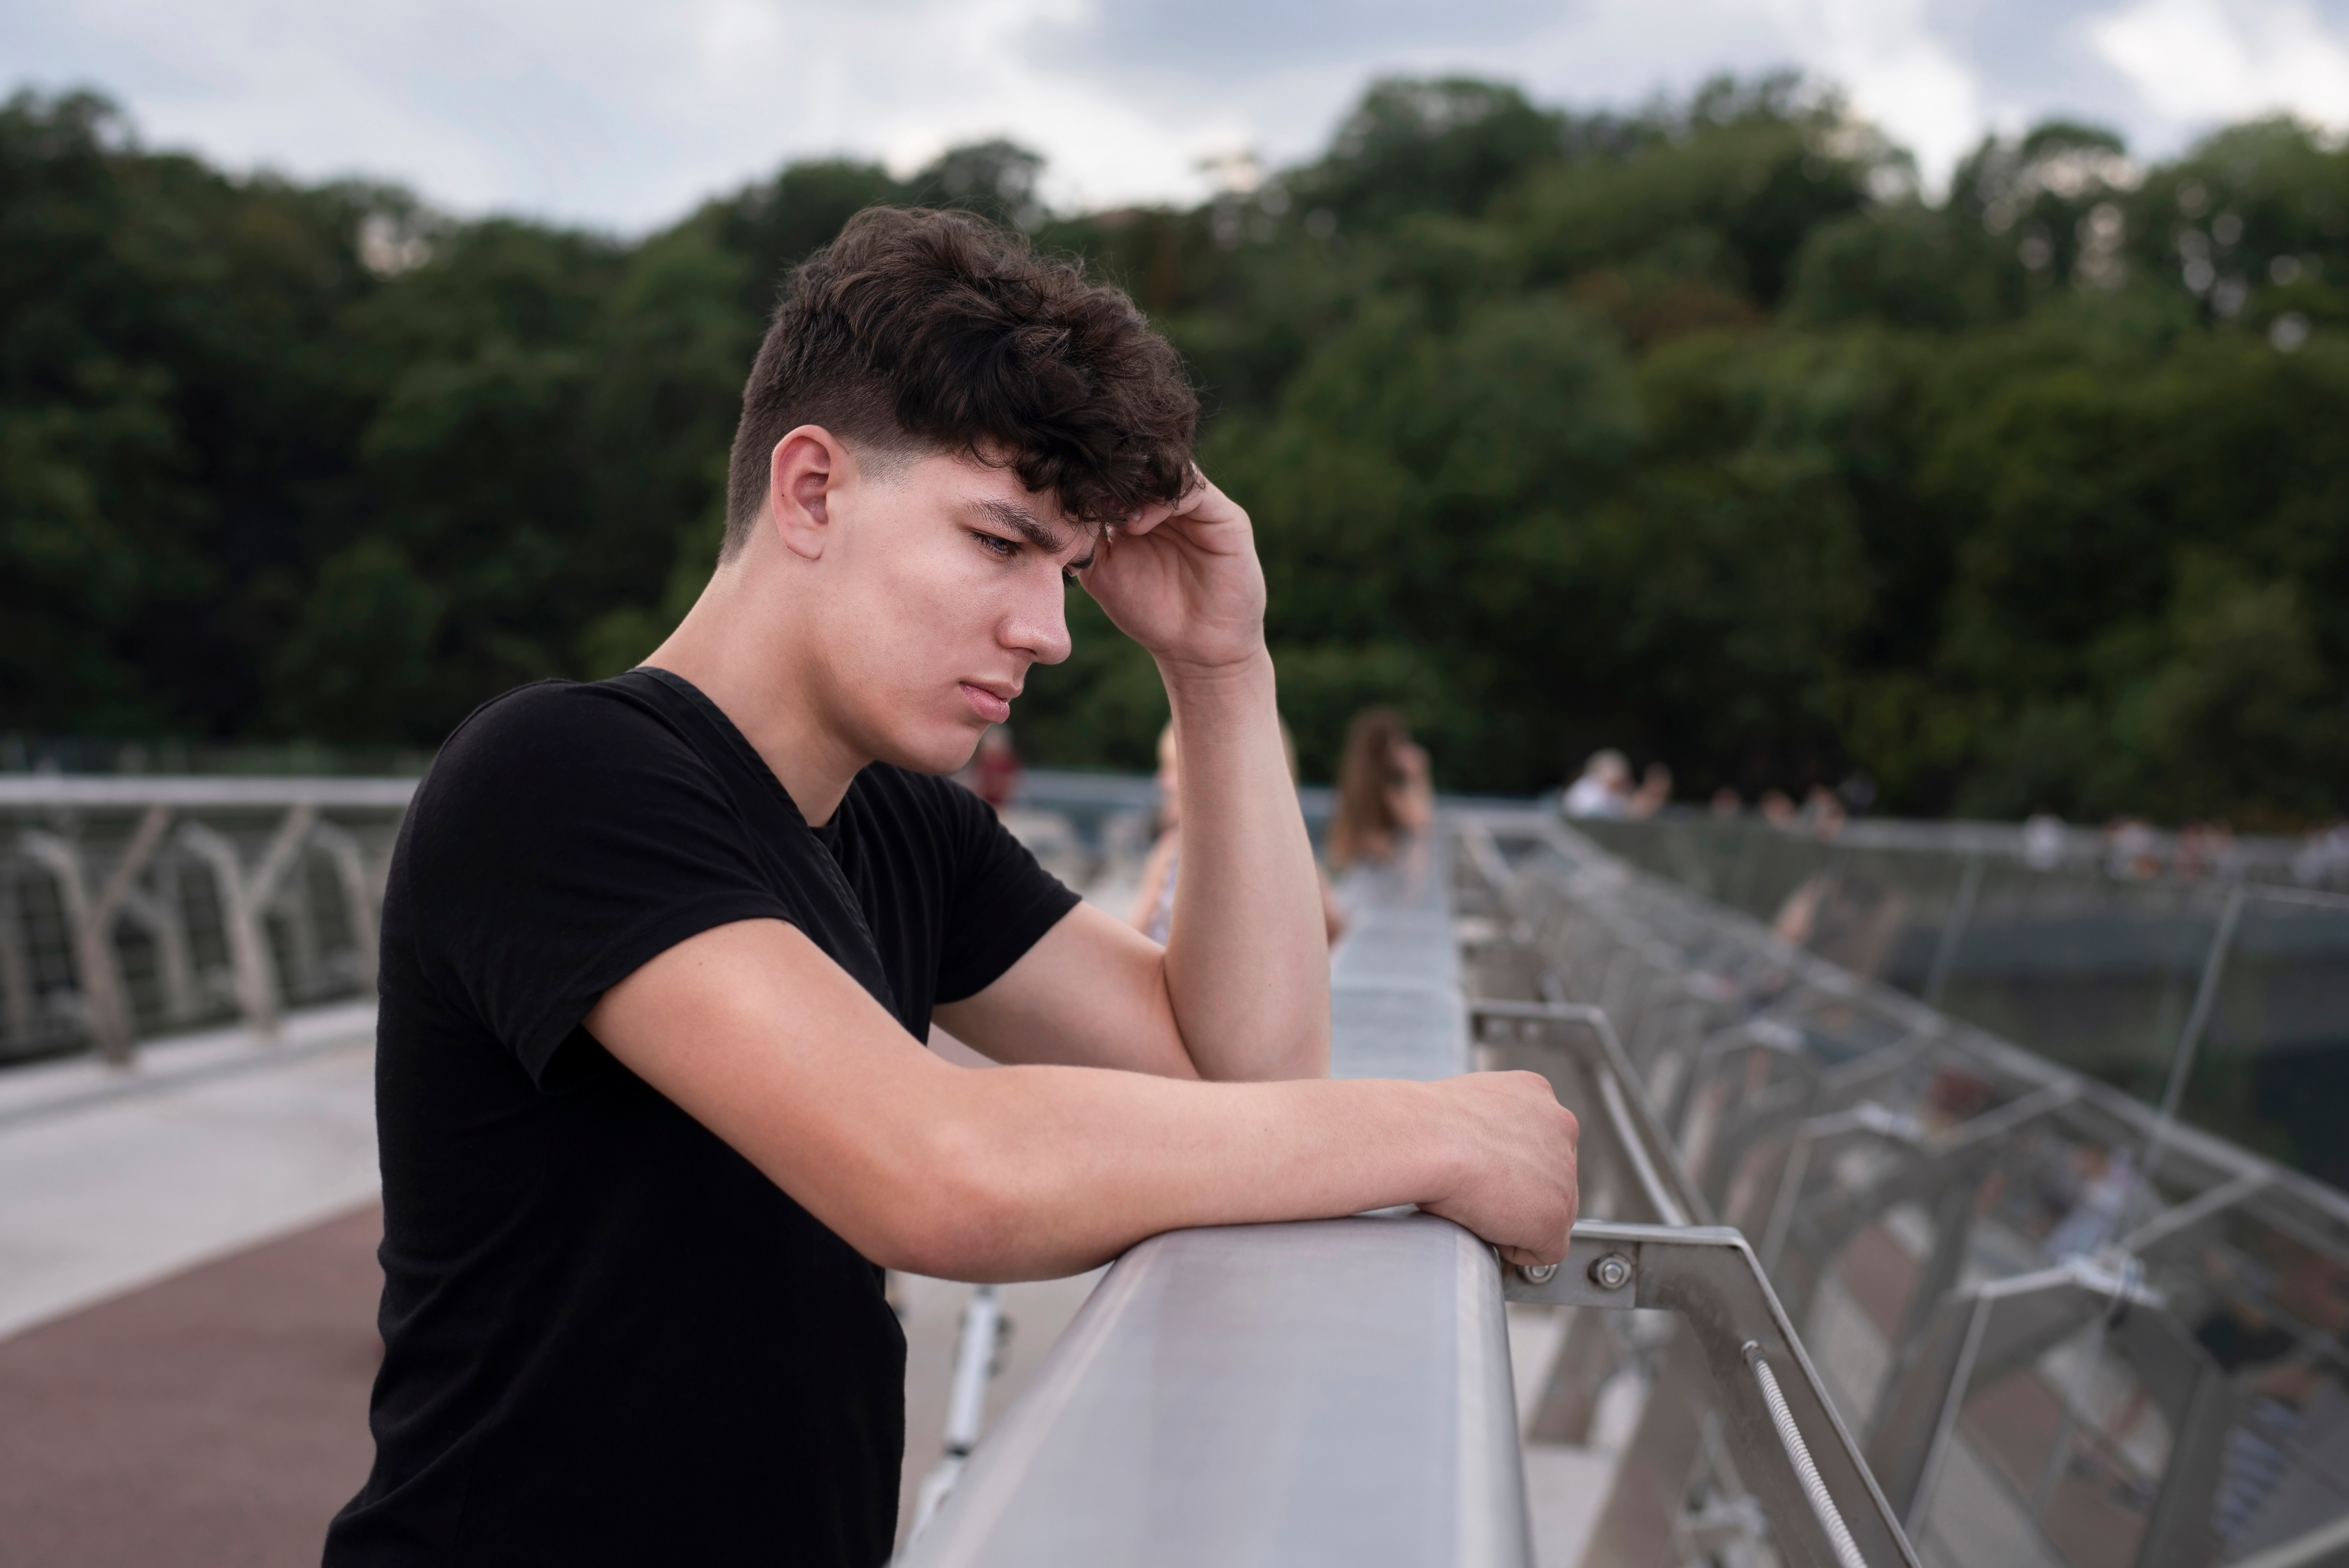 Un adolescent qui a l'air triste alors qu'il se tient près d'un pont | Source : Shutterstock